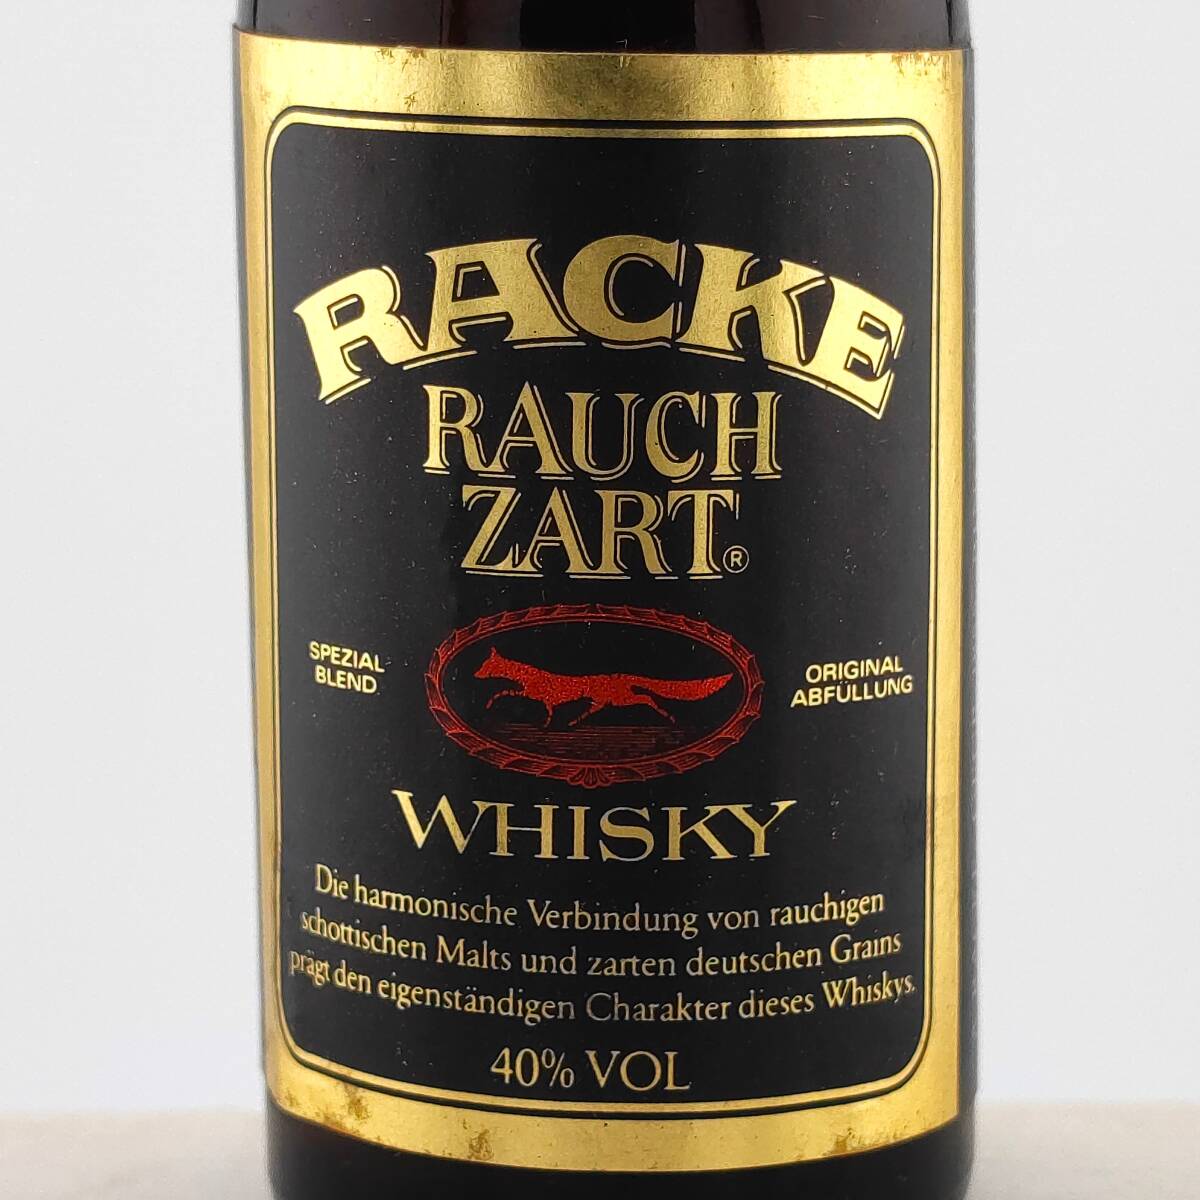 【全国送料無料】特級 RACKE RAUCH ZART SPEZIAL BLEND WHISKY　40度　40ml【ラッケ ラウホ ツァルト ウイスキー ブラックラベル】